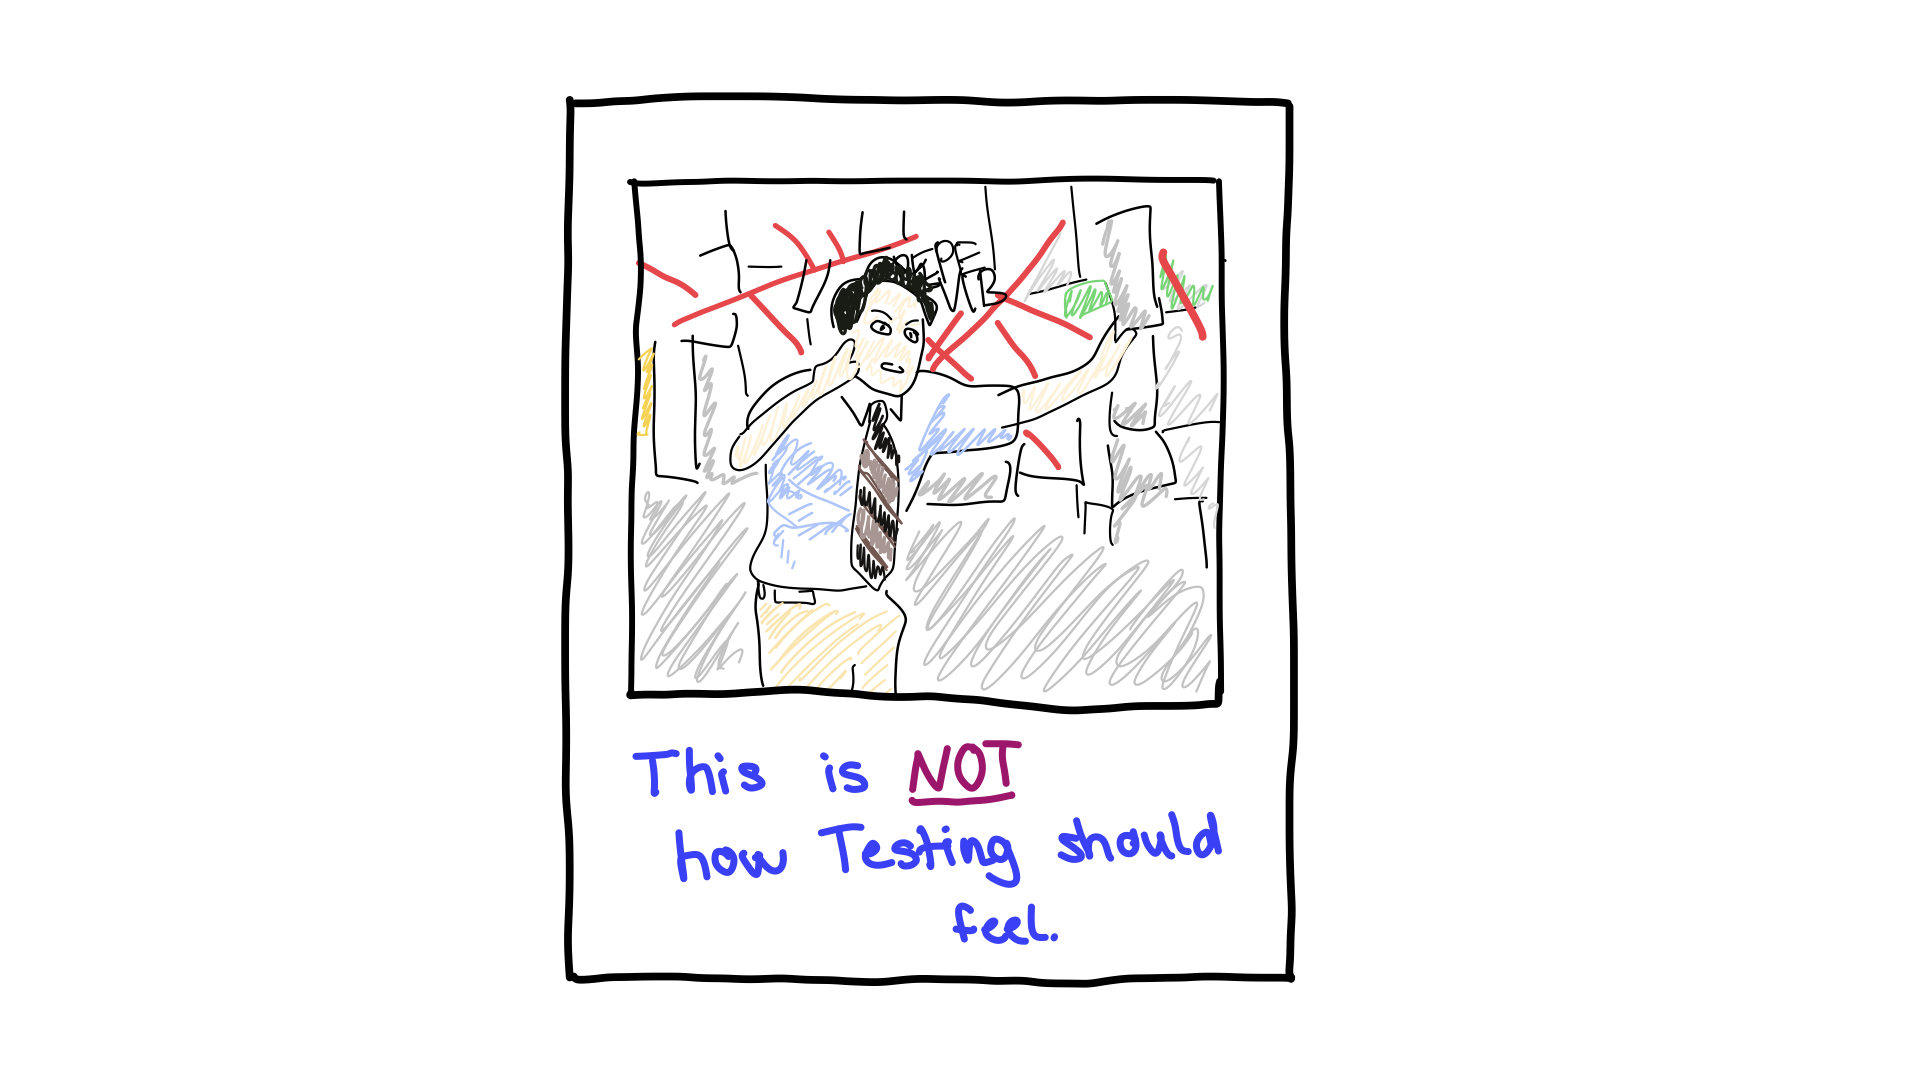 Non rendere i test complessi, non dovrebbero avere un approccio simile.